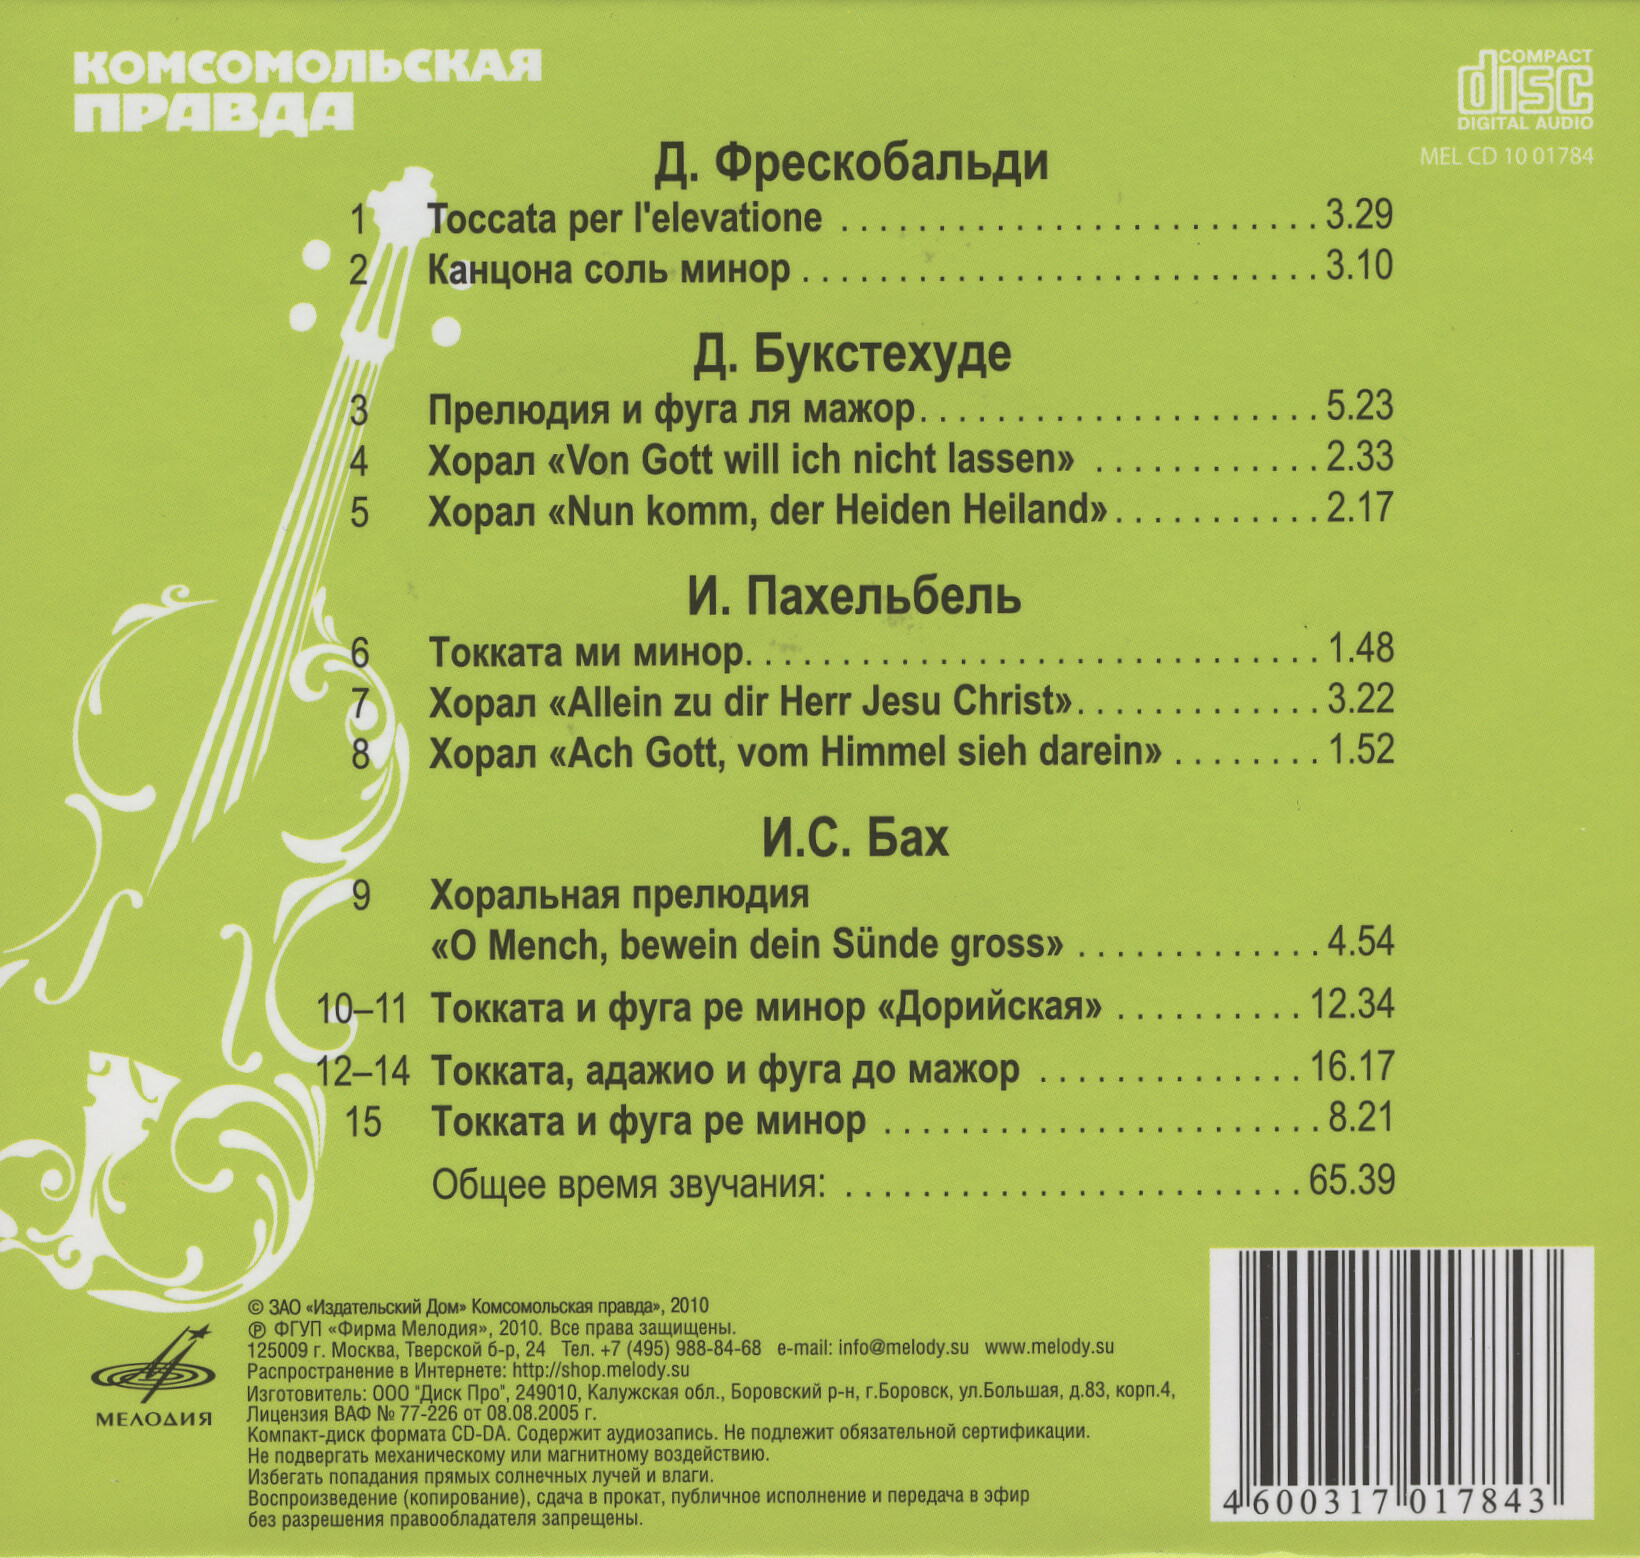 Органная музыка - Токката (серия "Великие композиторы - Коллекция классики от "КП". Том 24)